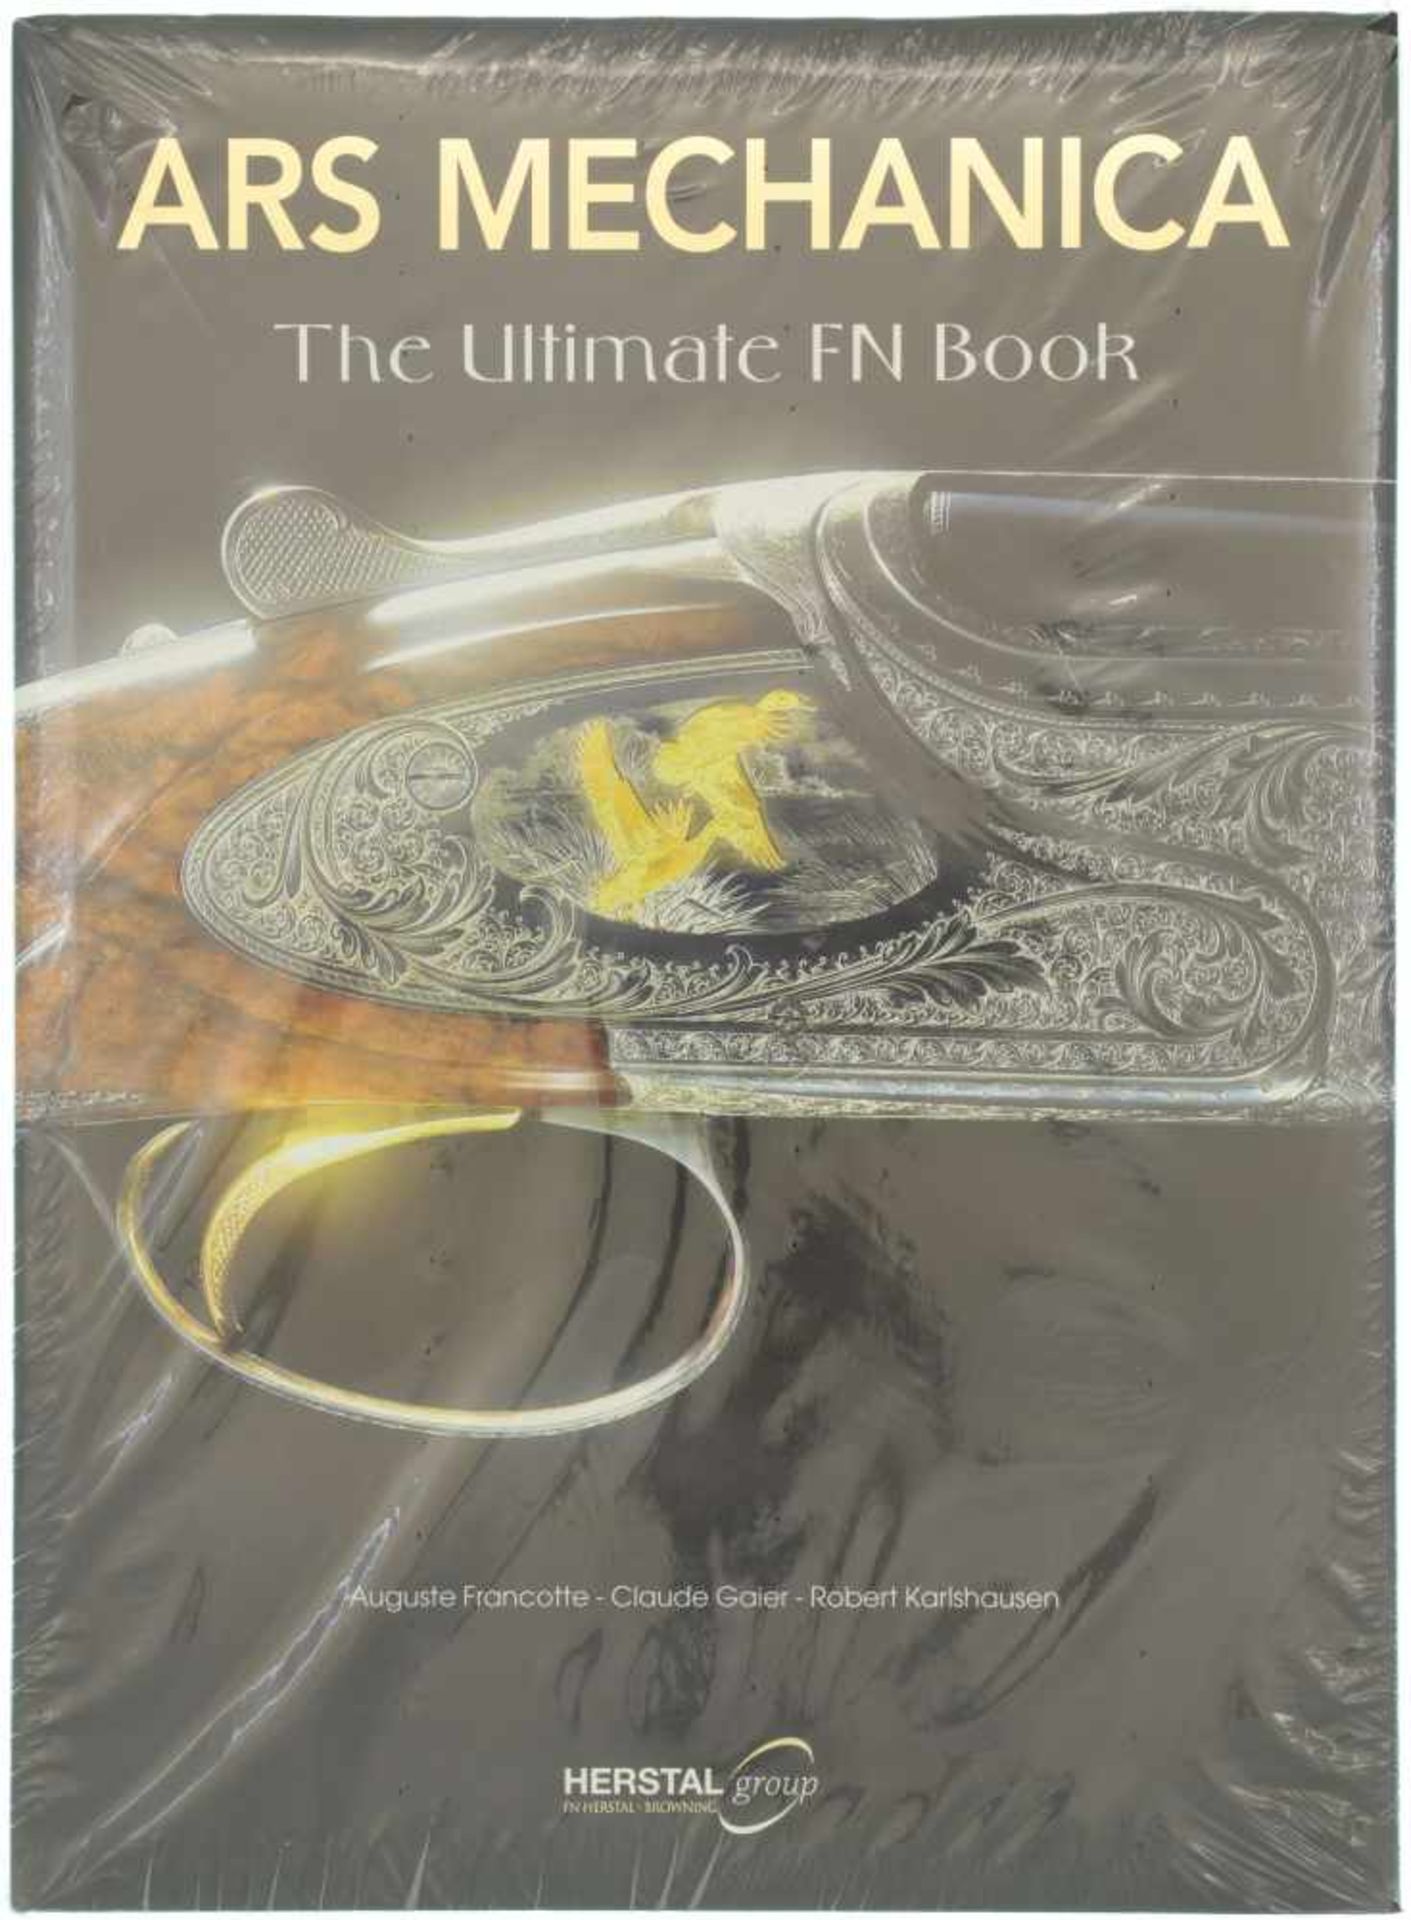 Ars Mechanica, The Ultimate FN Book Sehr spannendes Buch über die FN Werke, Geschichte, Produkte und